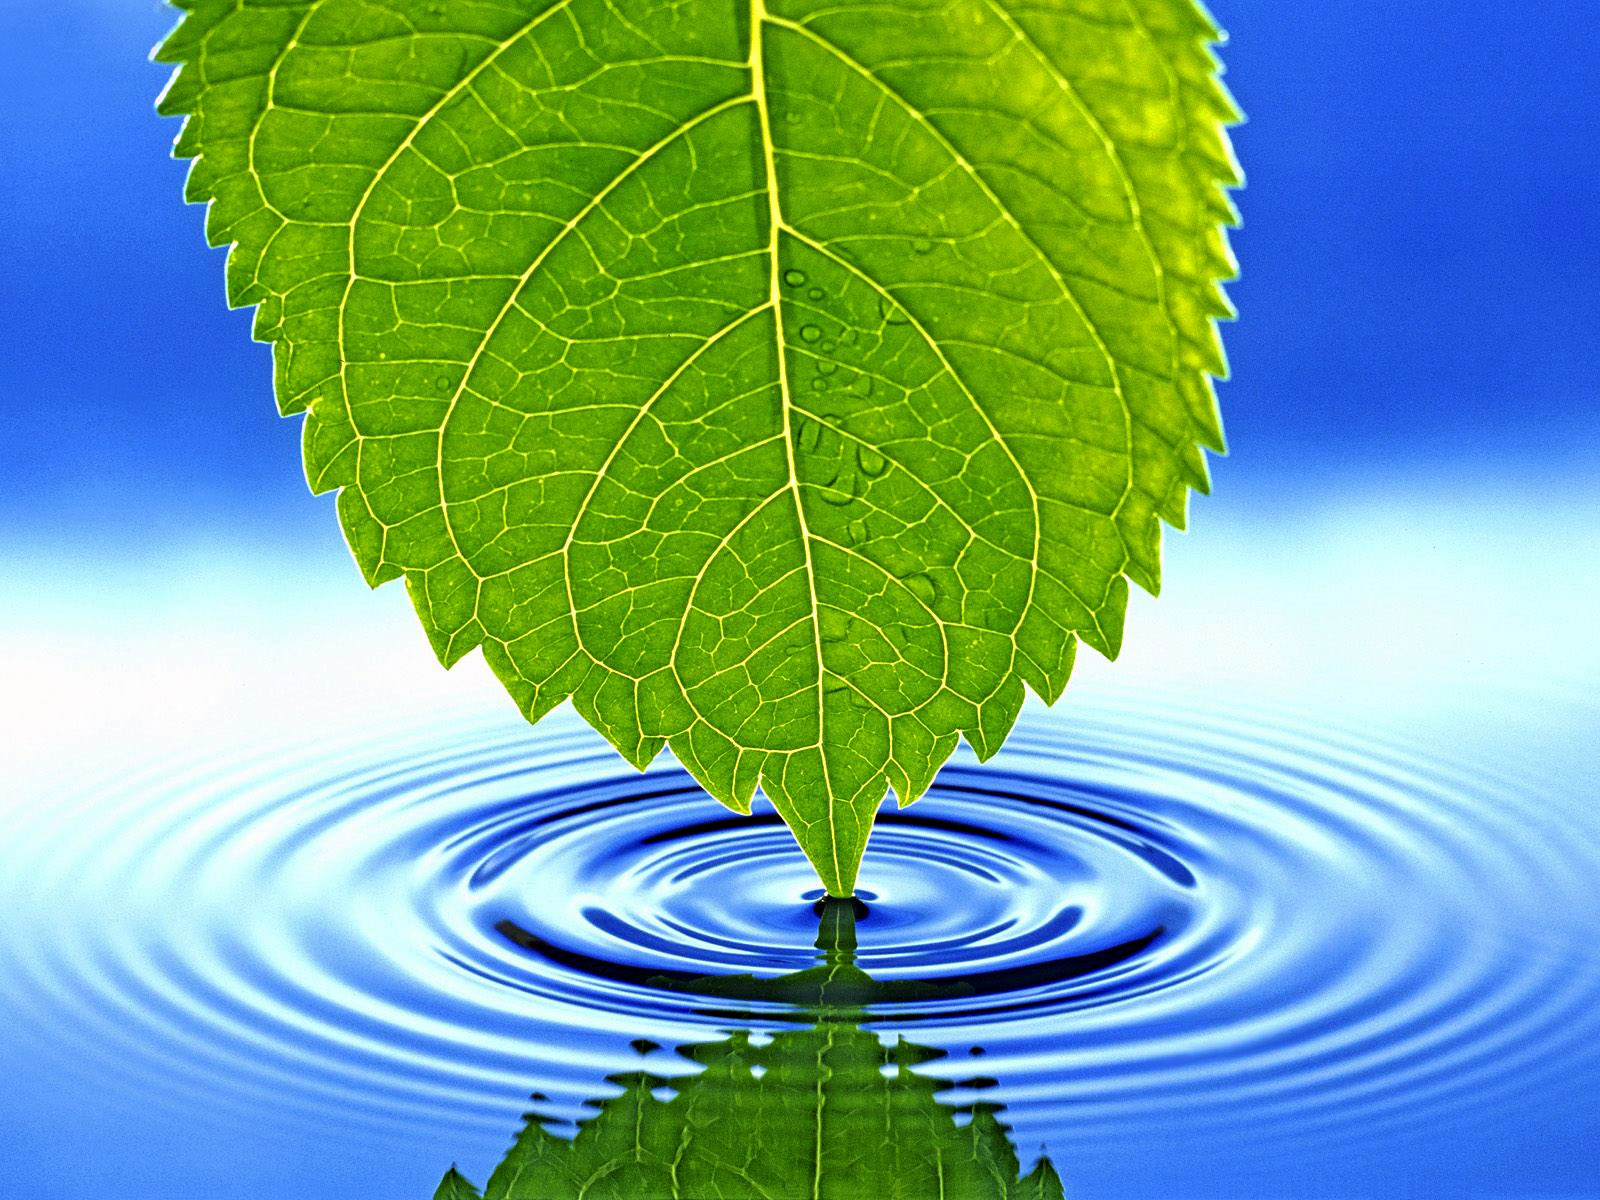 зеленый лист и рябь на чистой, голубой воде, фон, текстура, blue water